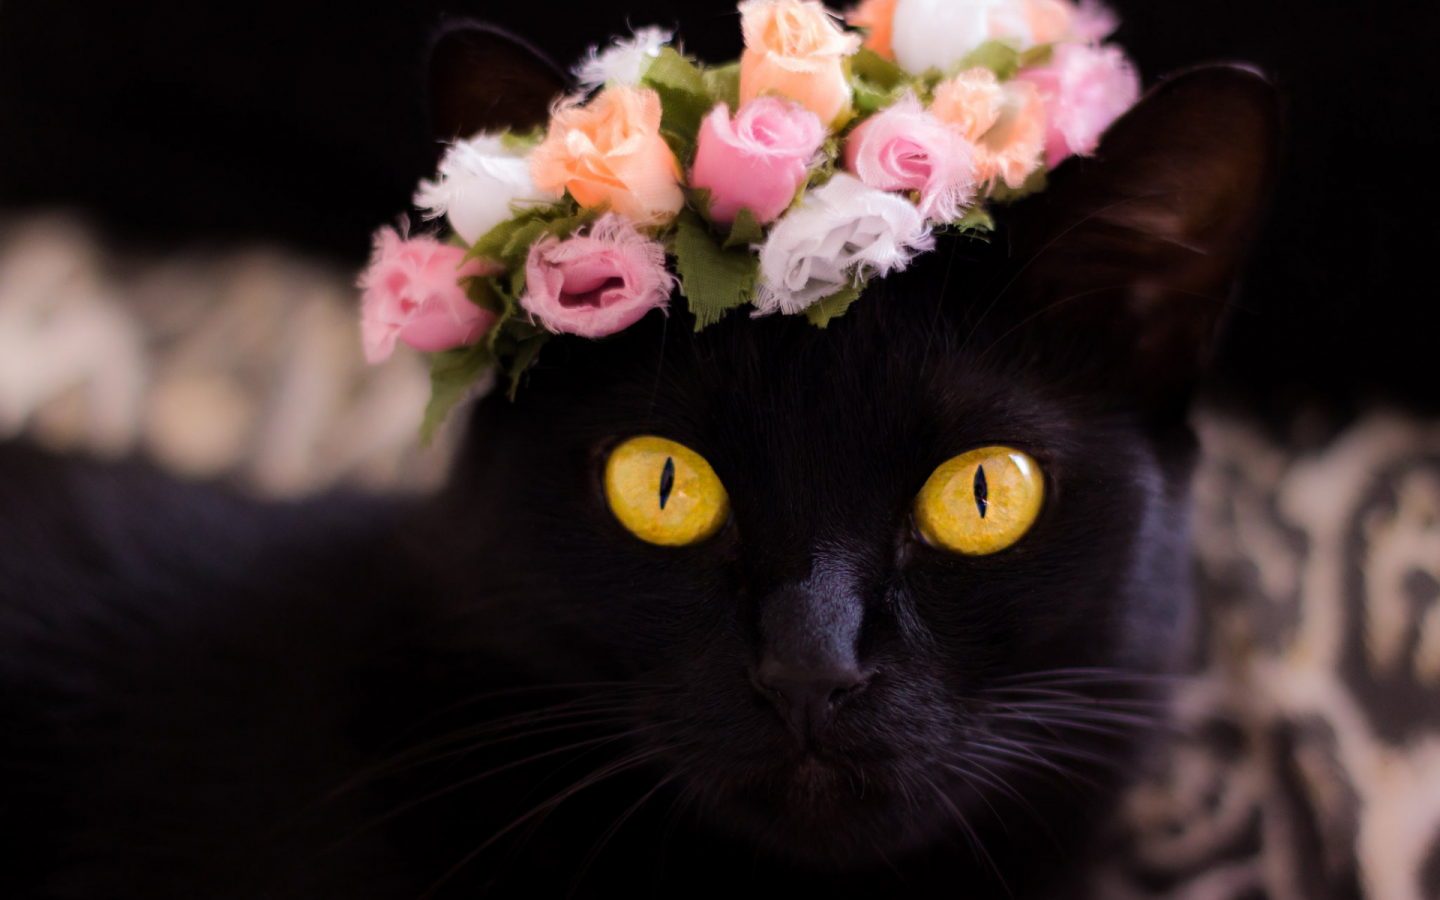 кошка чёрная, взгляд